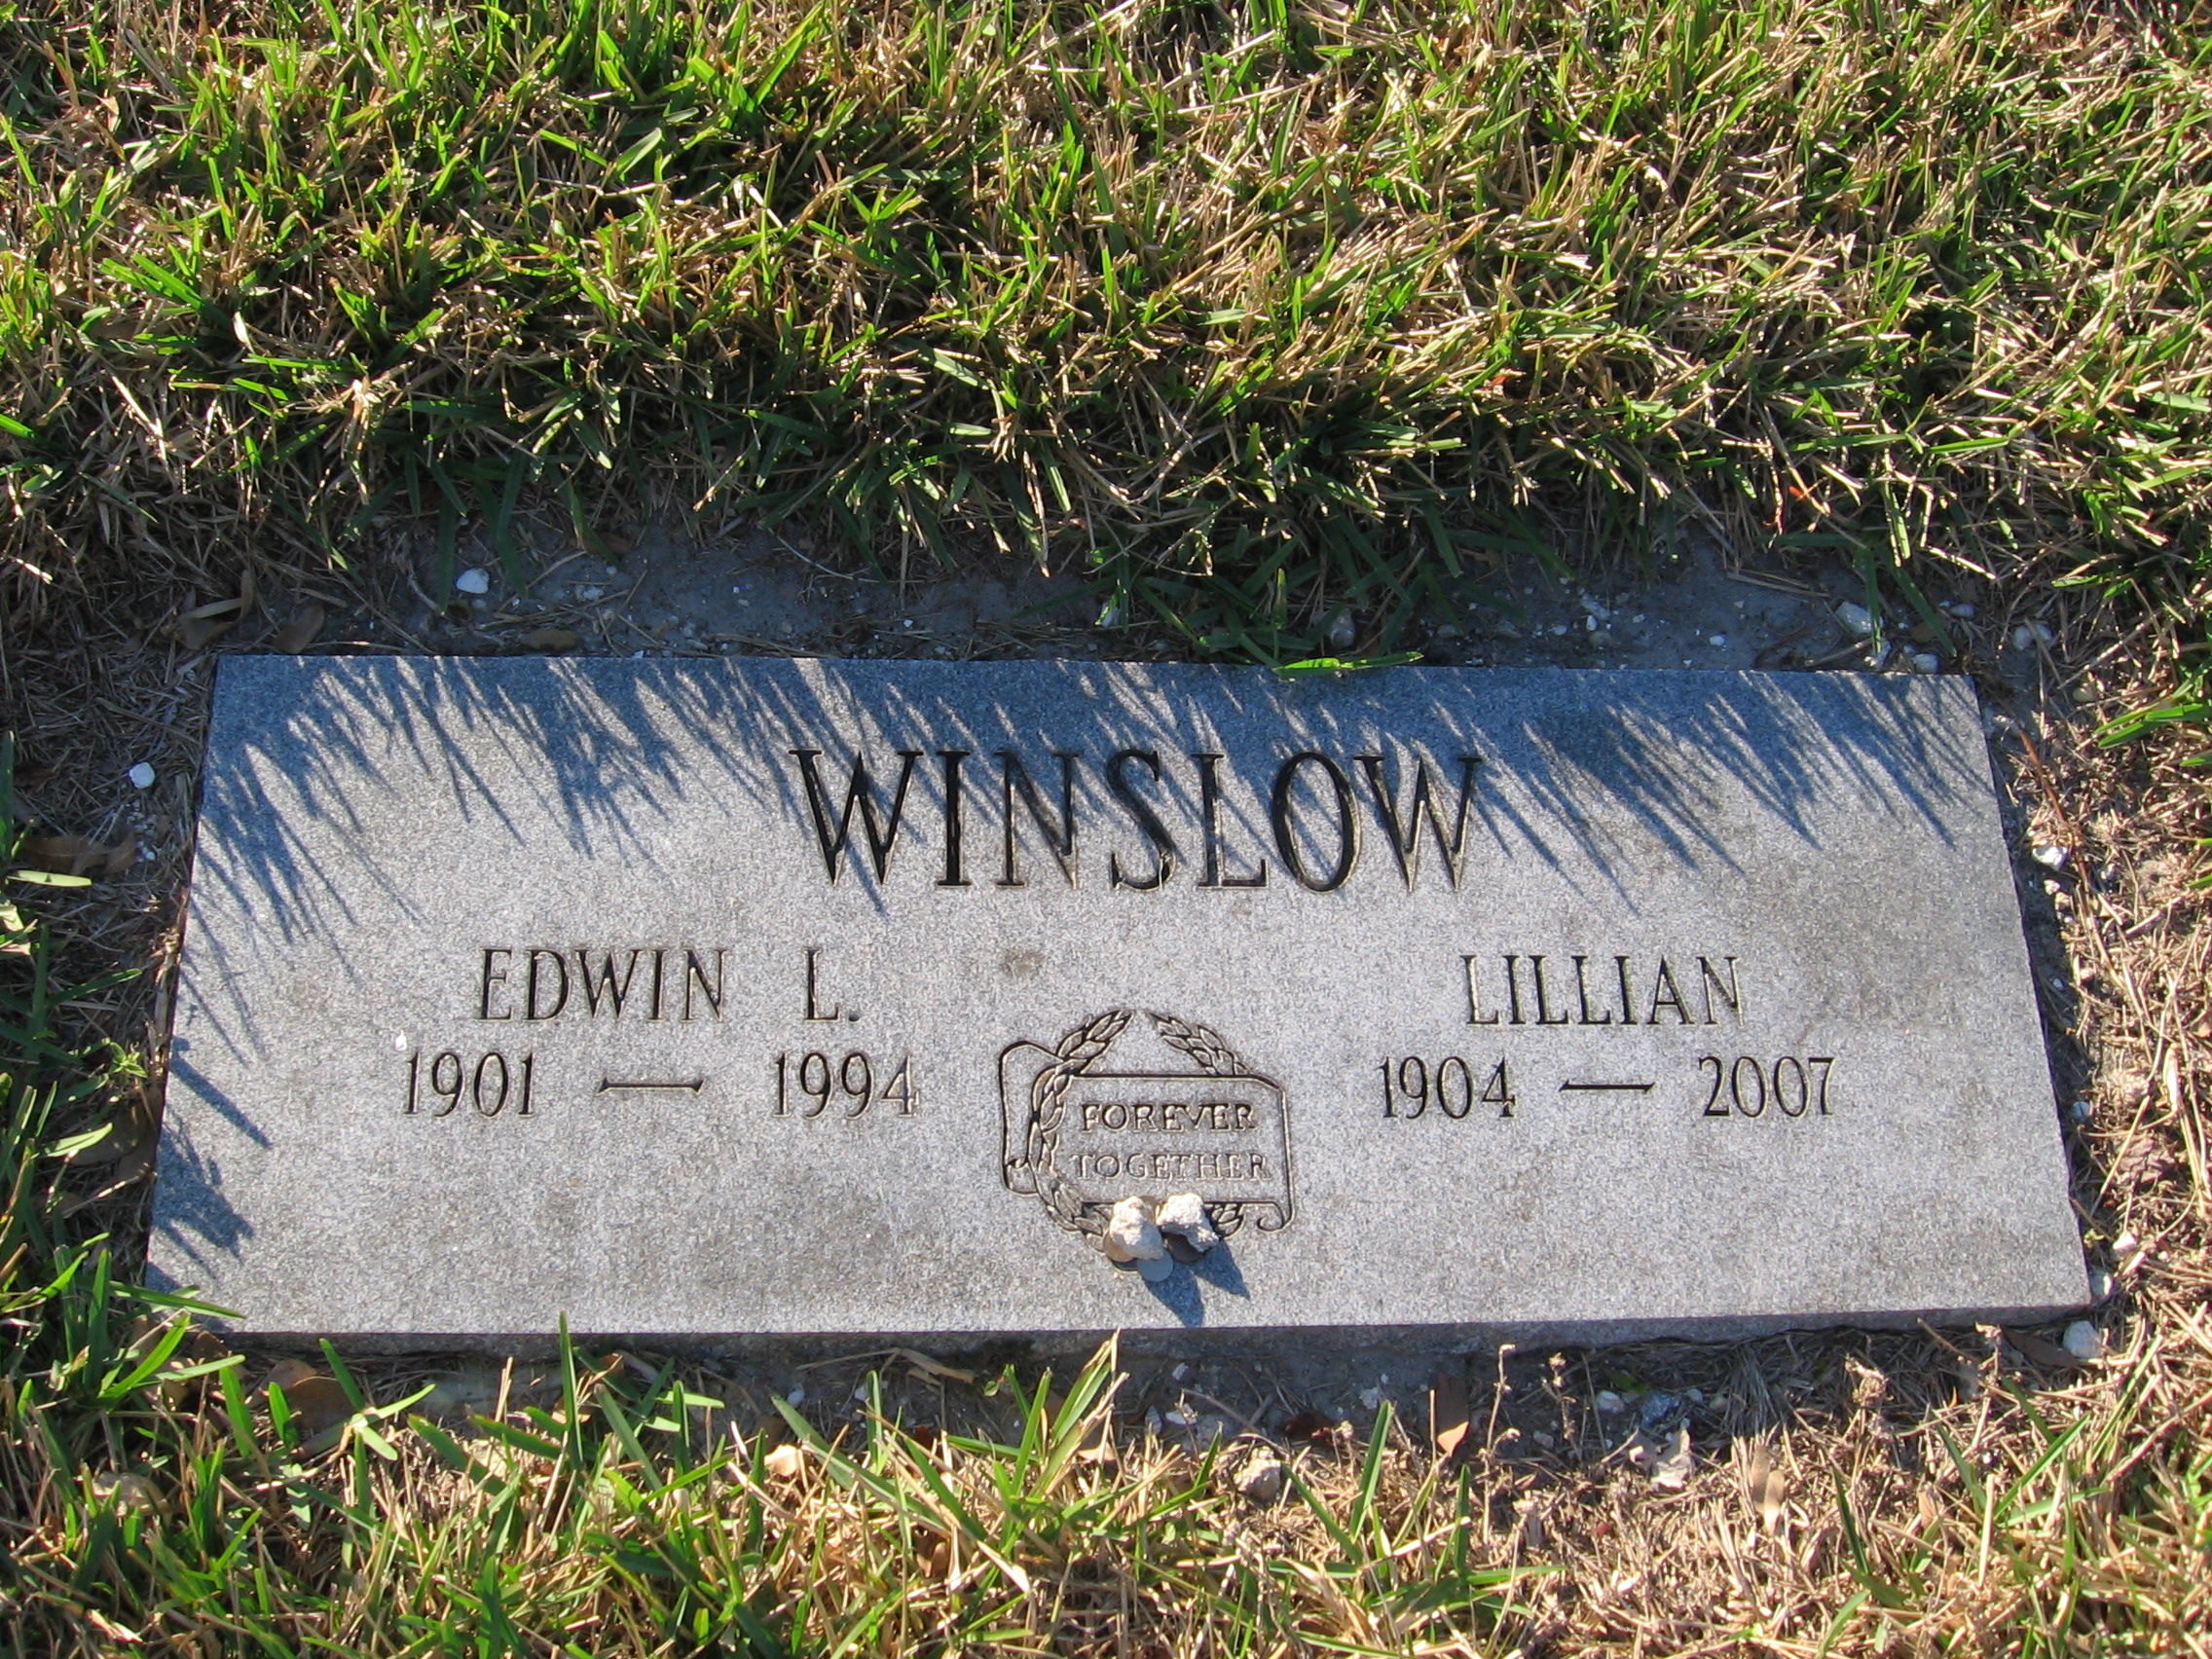 Edwin L Winslow